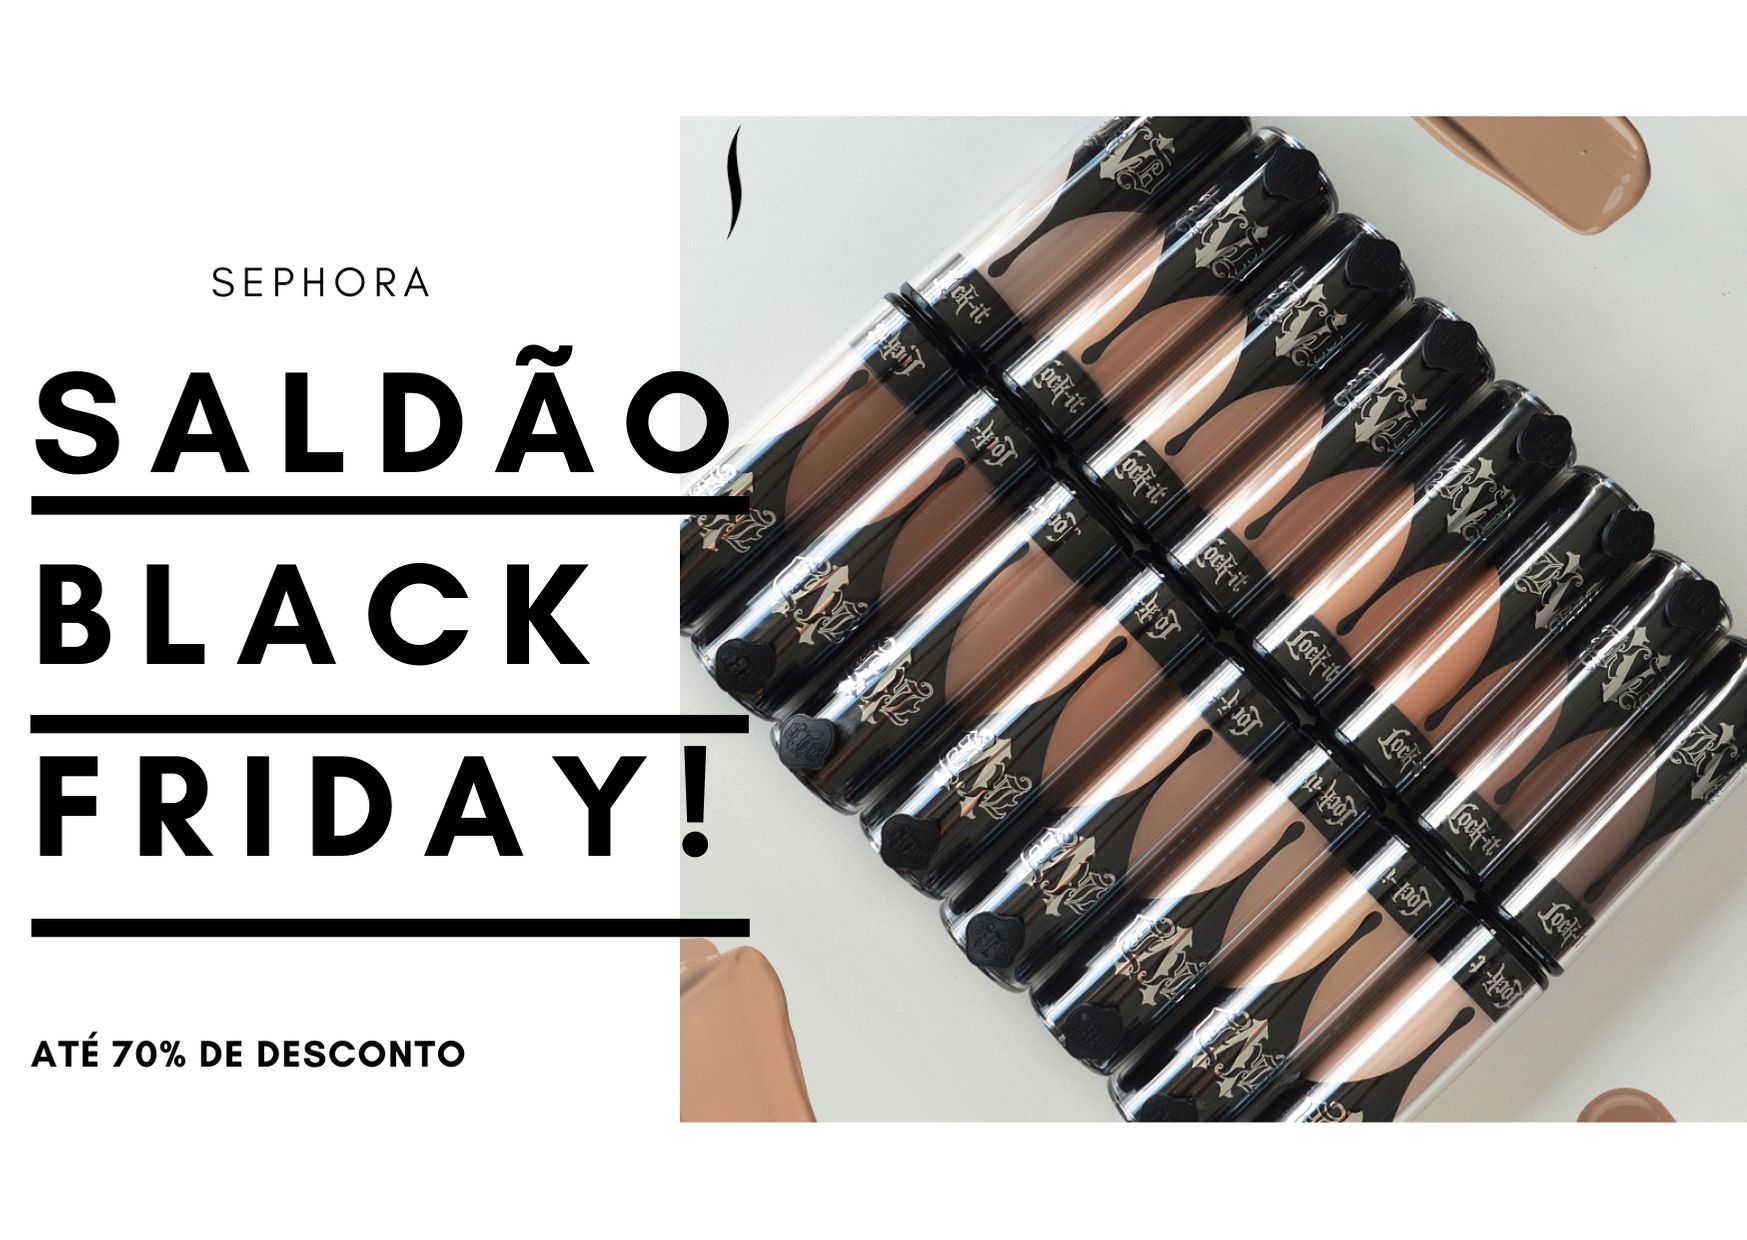 Black Friday Sephora